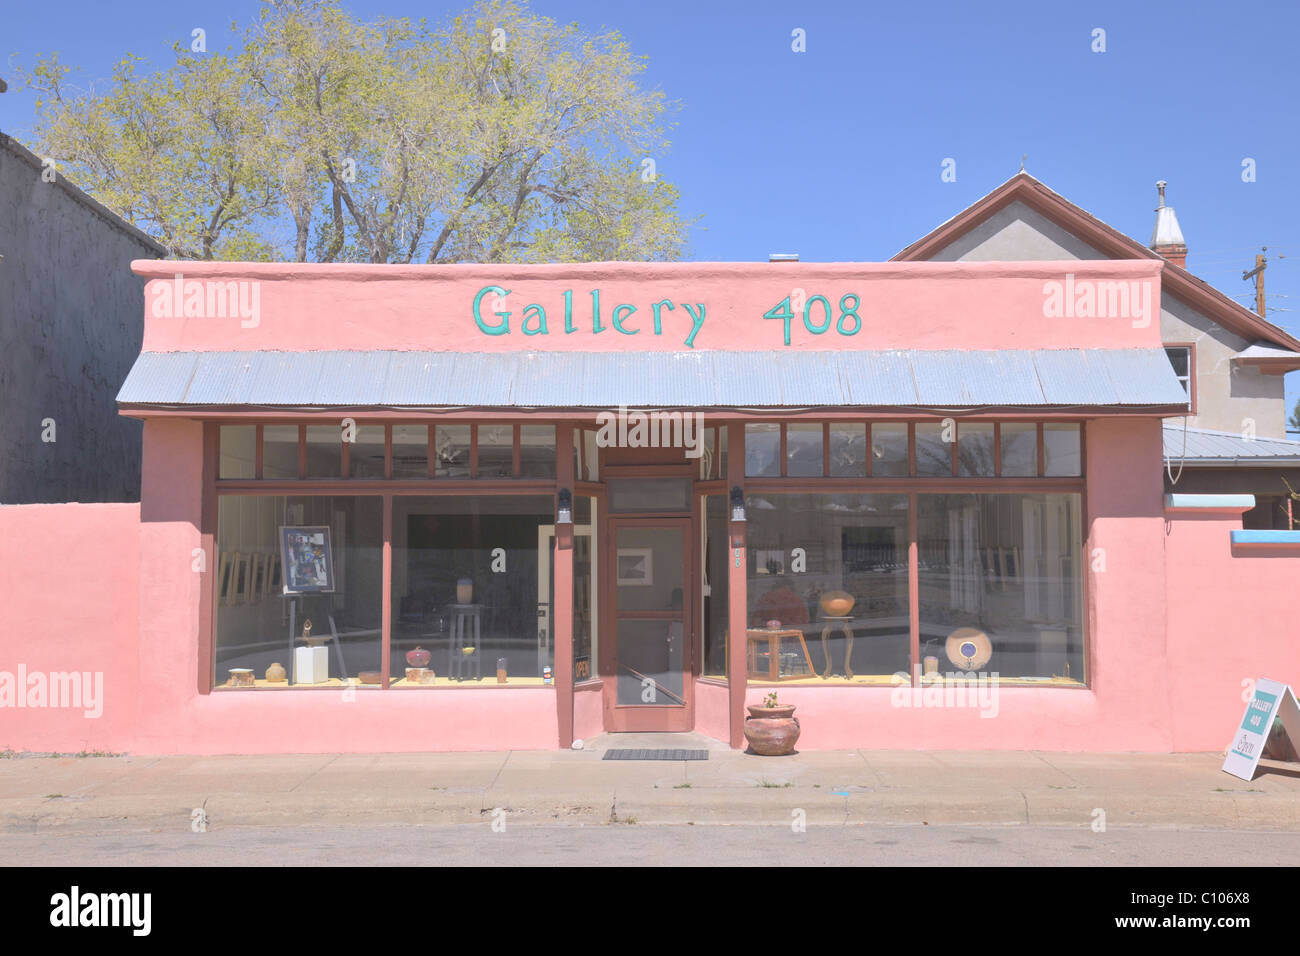 Gallery 408 rappresenta gli artisti di Lincoln County, in Carrizozo, Nuovo Messico. Foto Stock